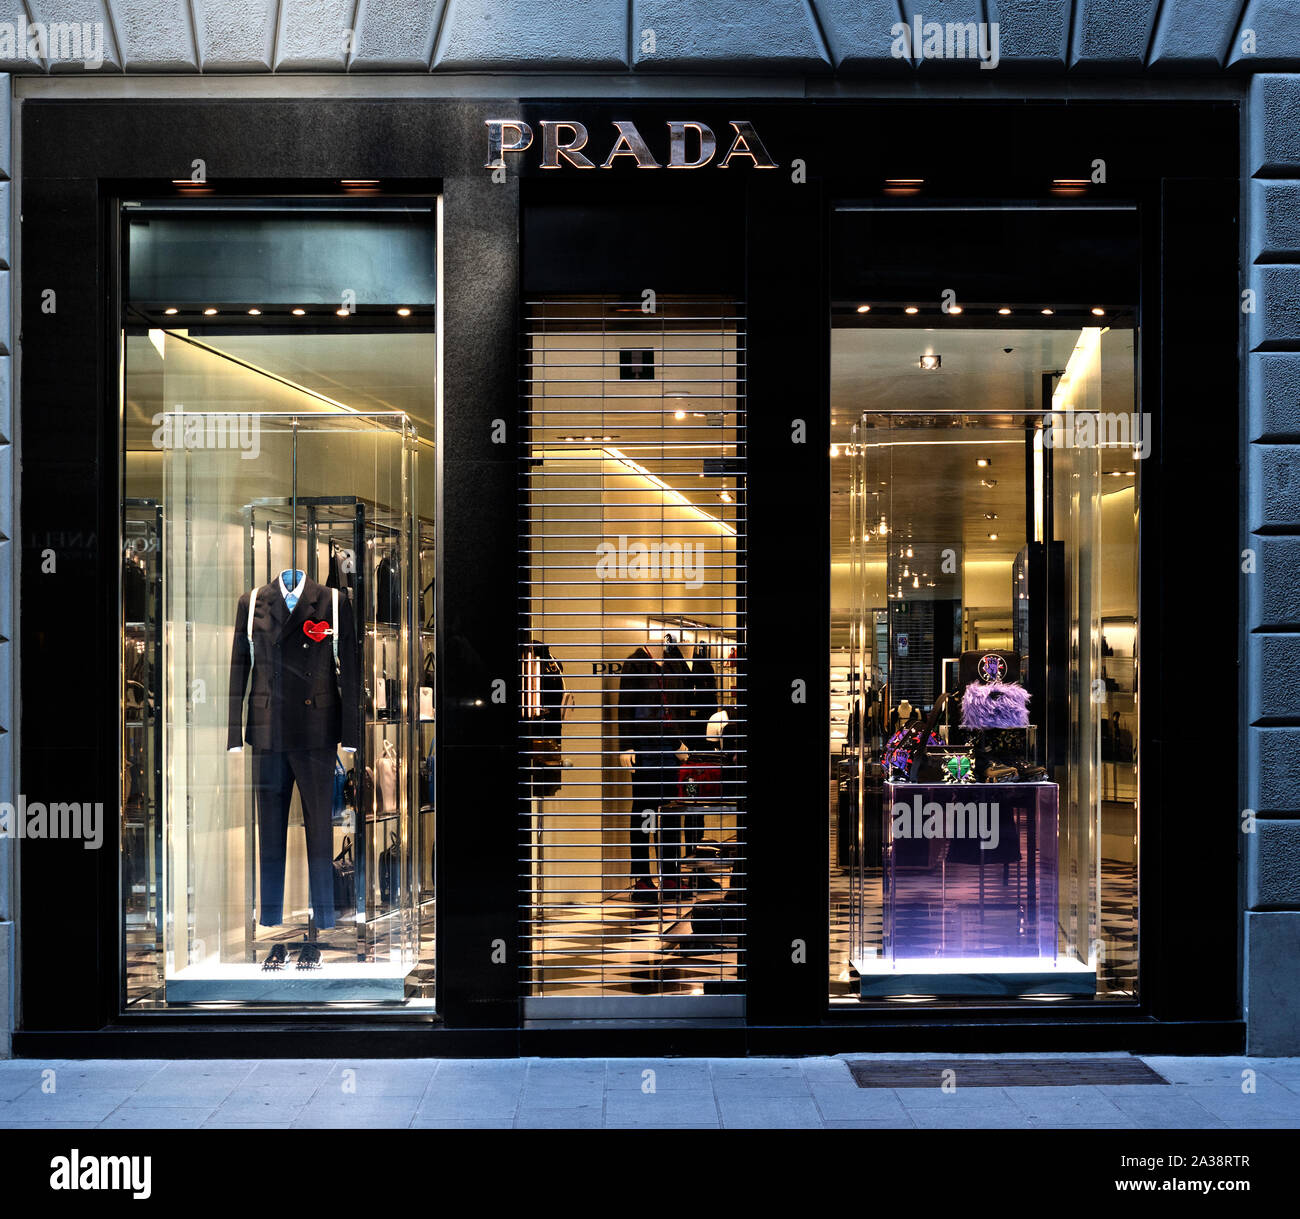 Prada, italienische Luxus Fashion House, Geschäft, Geschäft, Business, Unternehmen, Italien Stockfoto